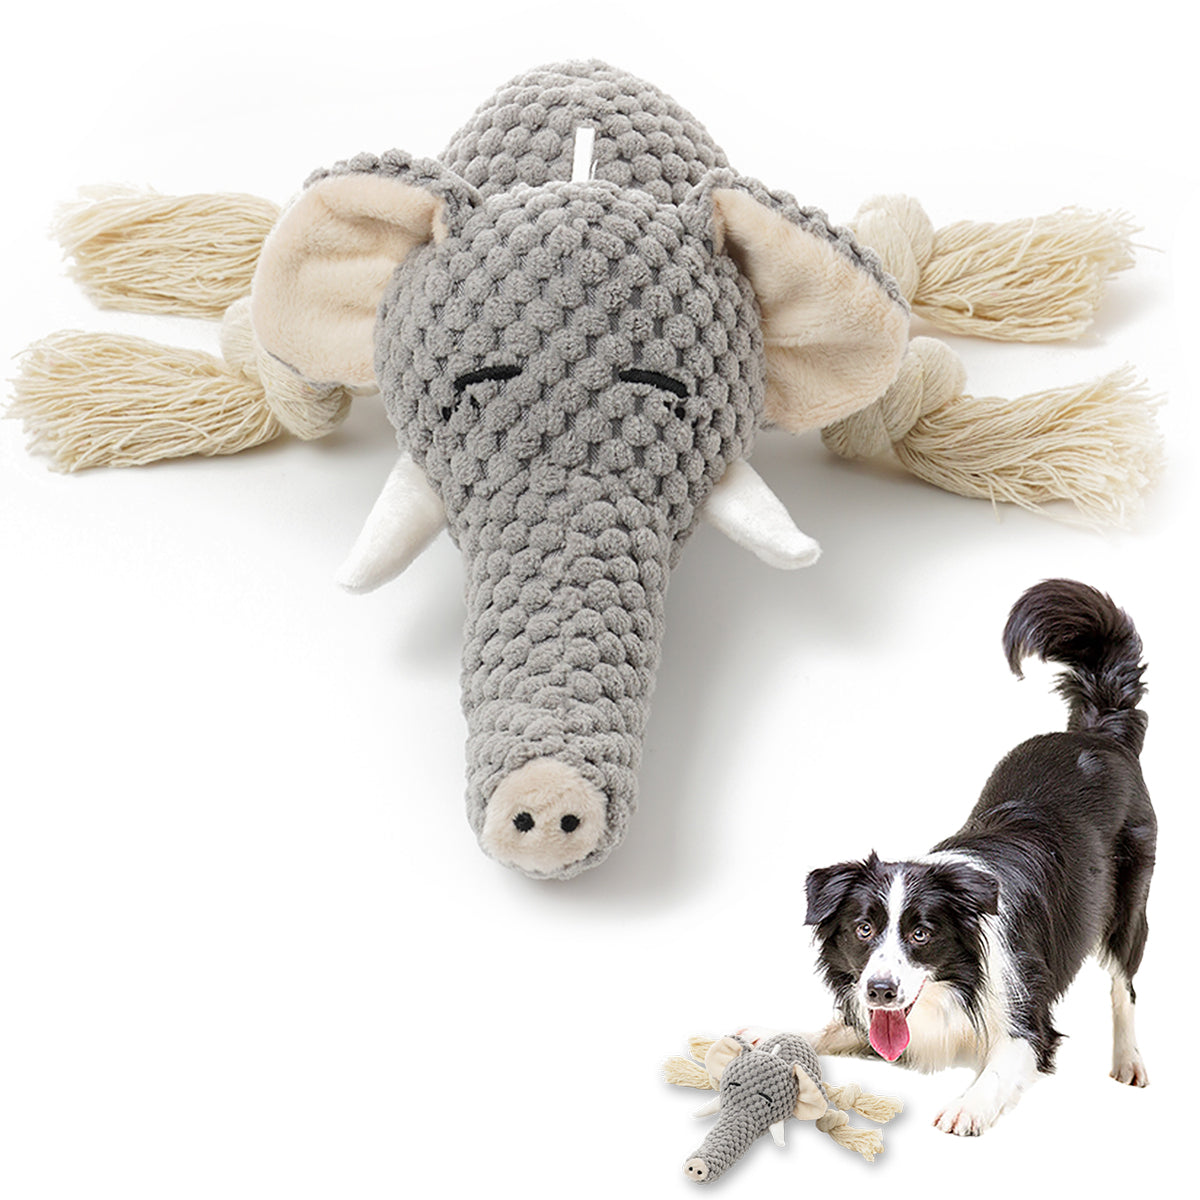 Beniqu Durable Soft Elephent Dog Plush Squeaky Toys